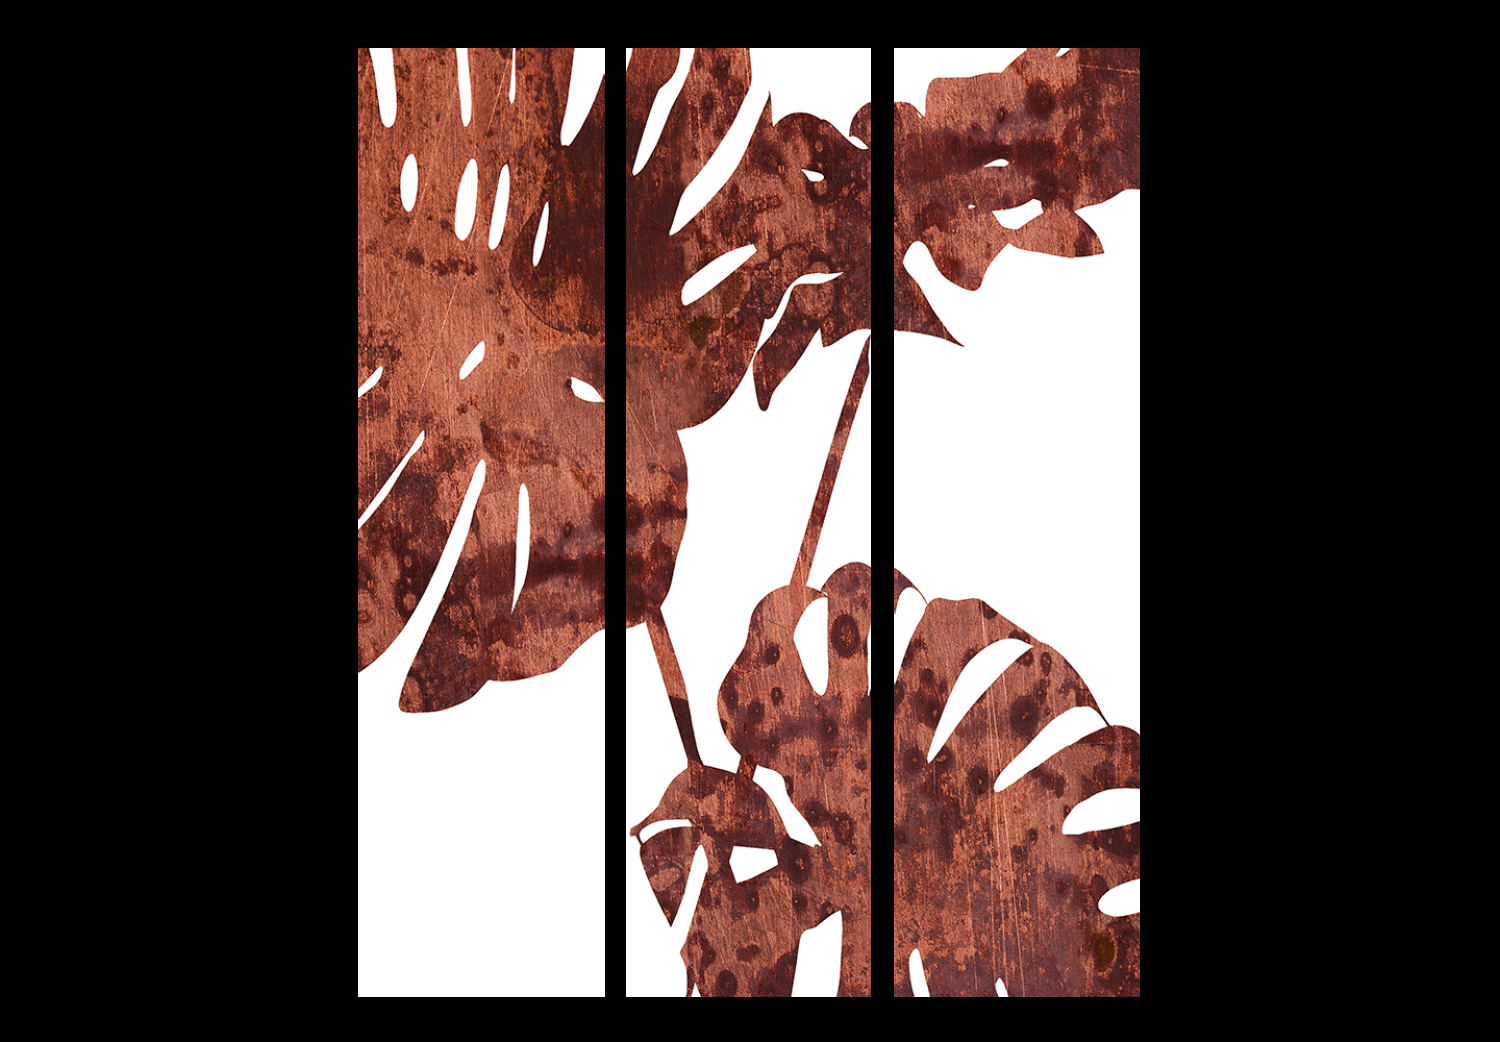 Biombo barato Monstera elegante (3 partes) - hojas marrones de planta tropical